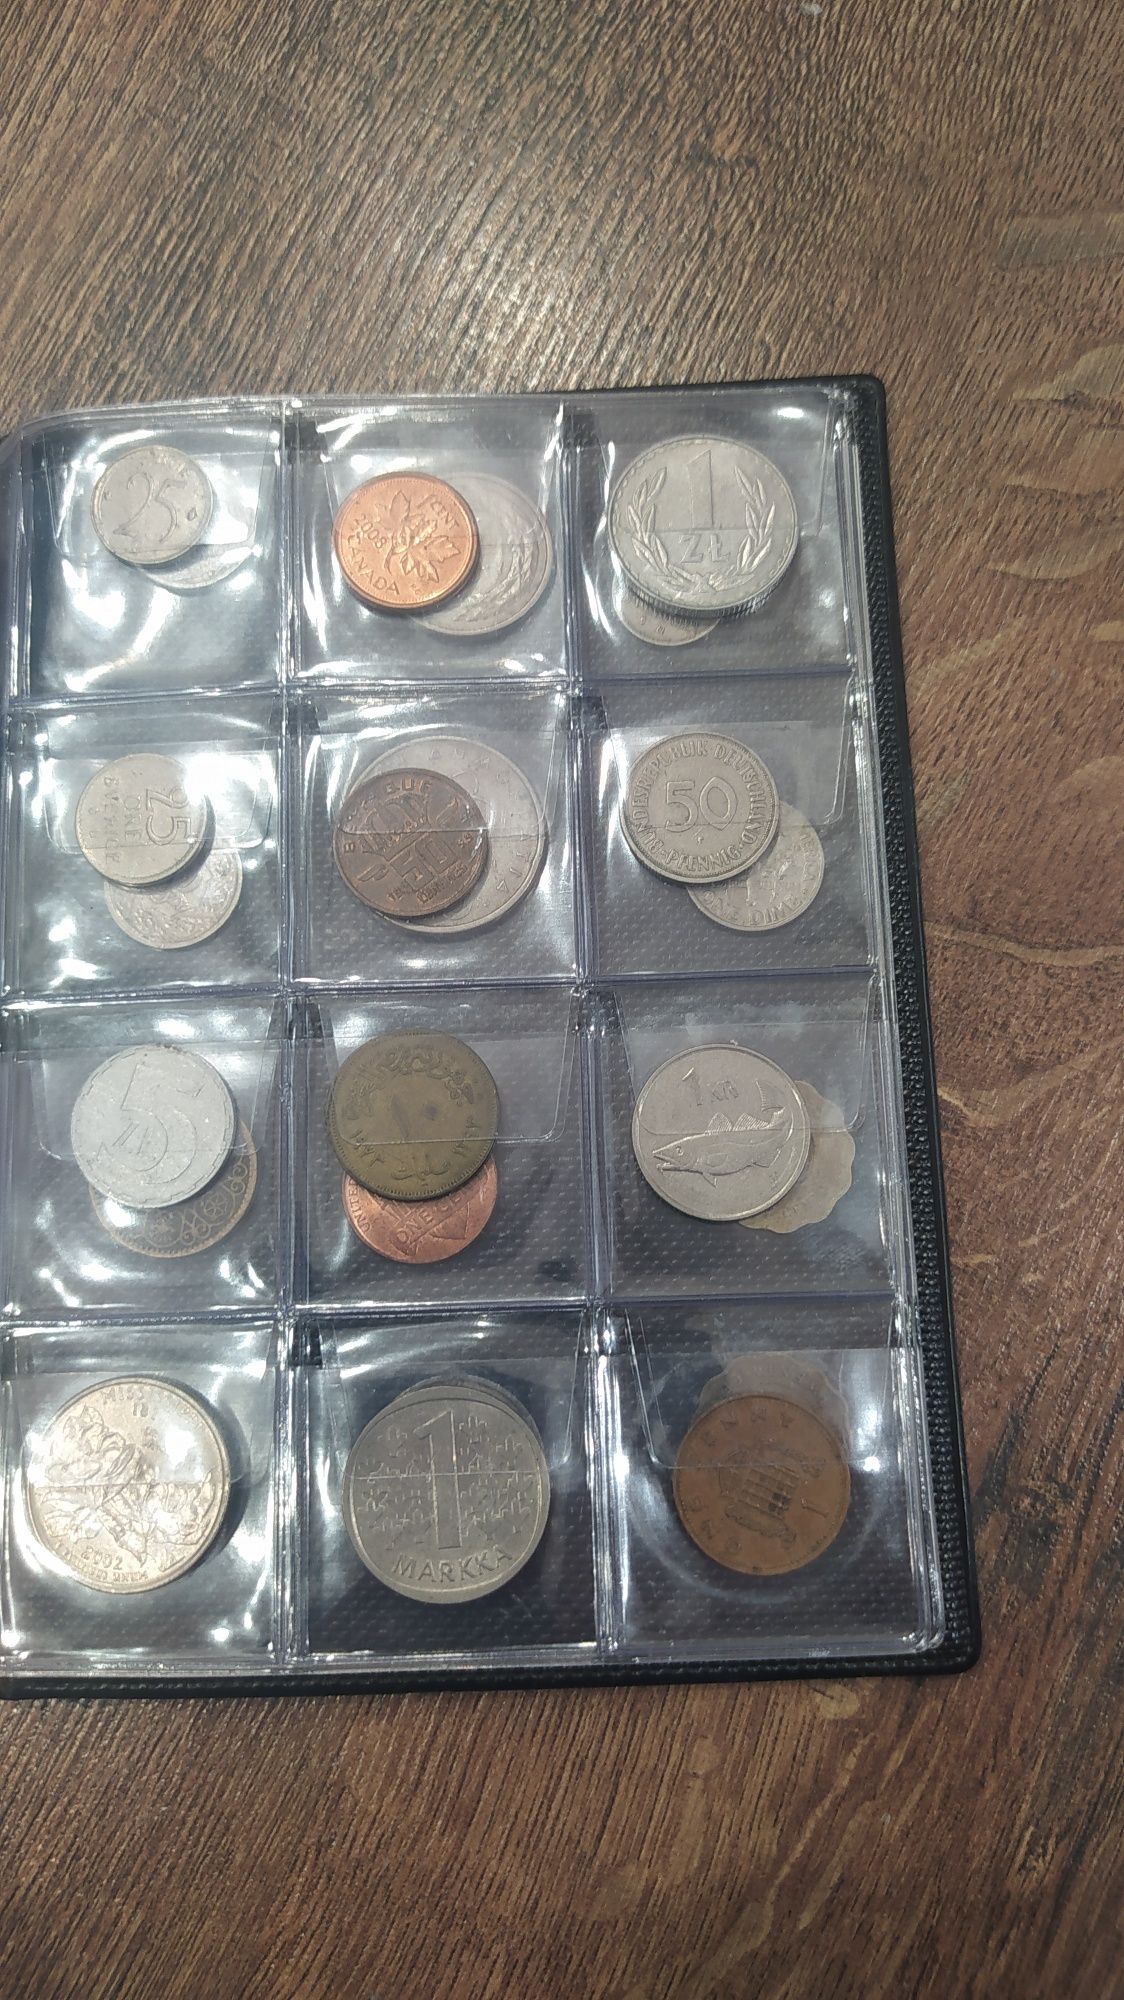 Колекция монет мира 60шт.